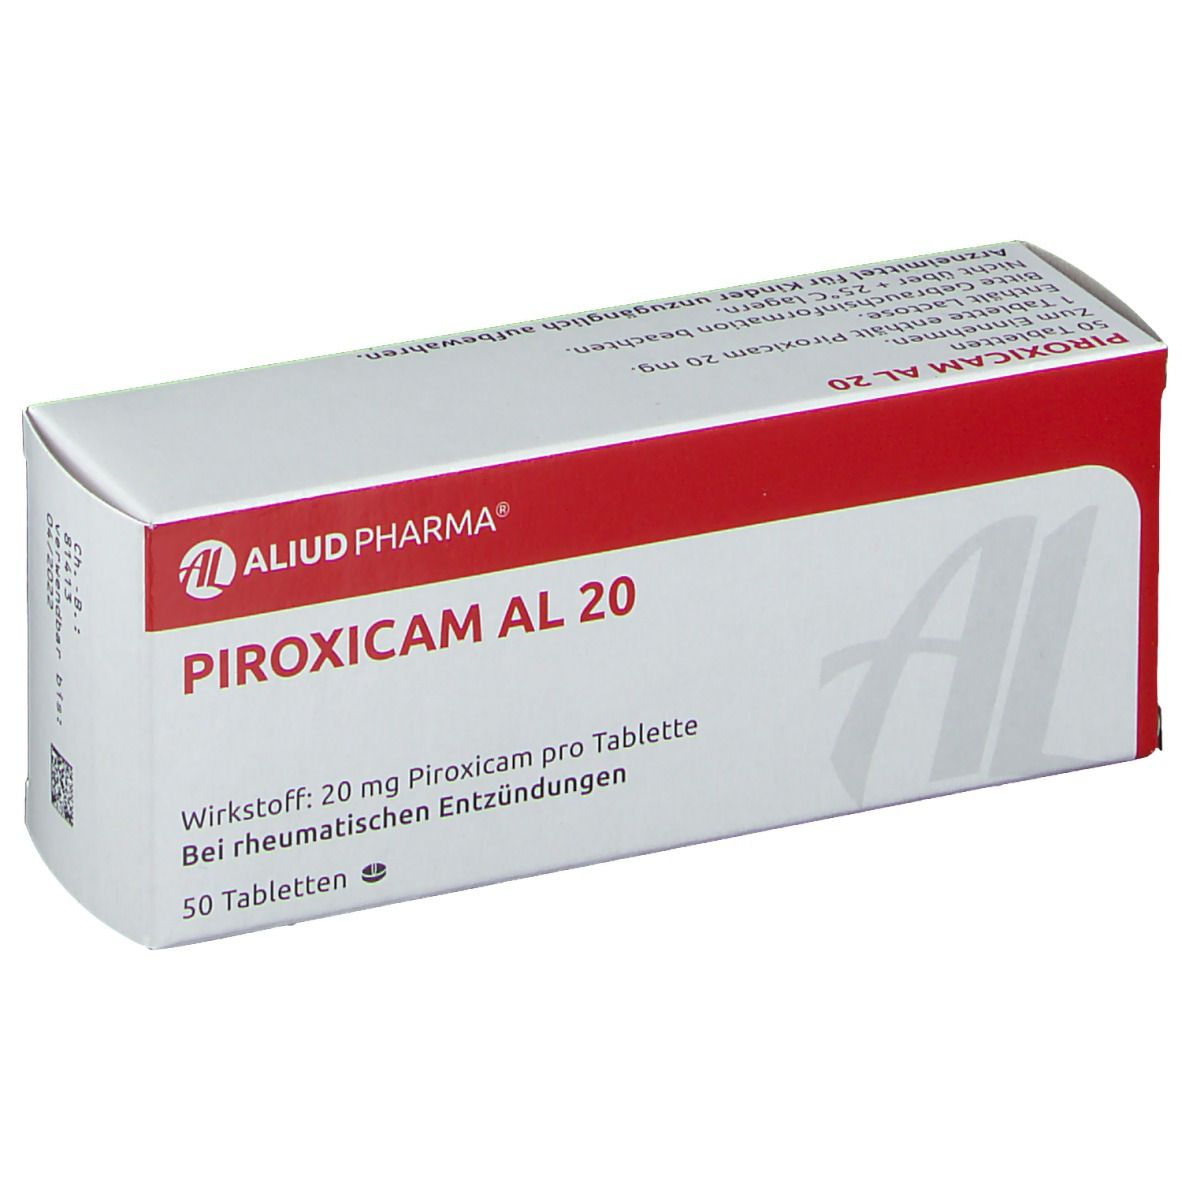 Piroxicam AL 20